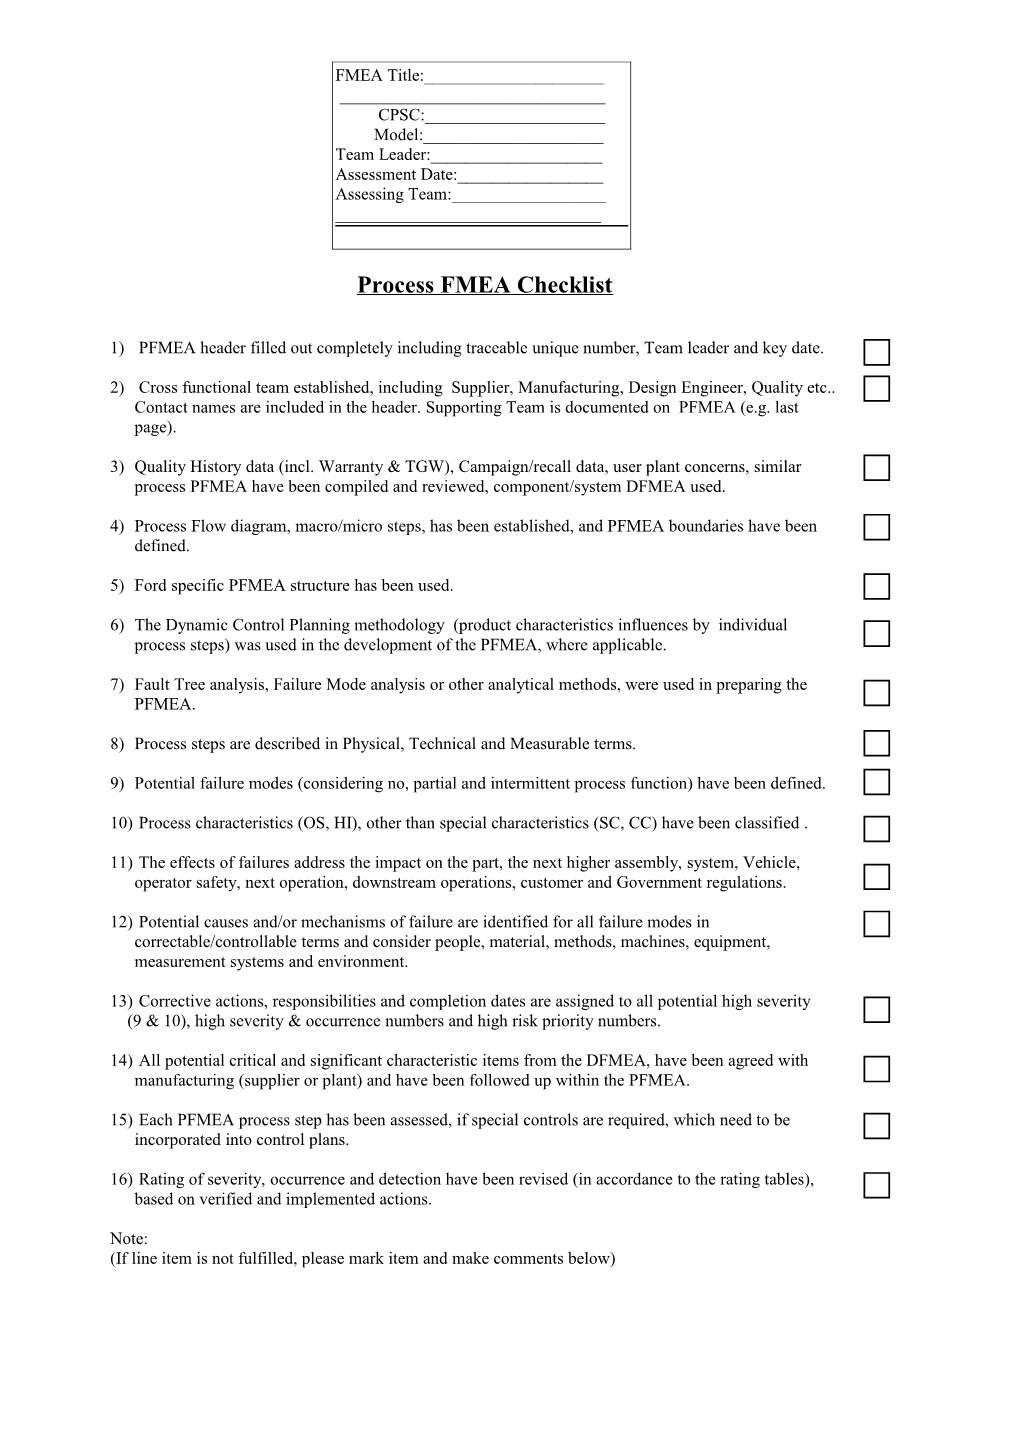 Process FMEA Checklist